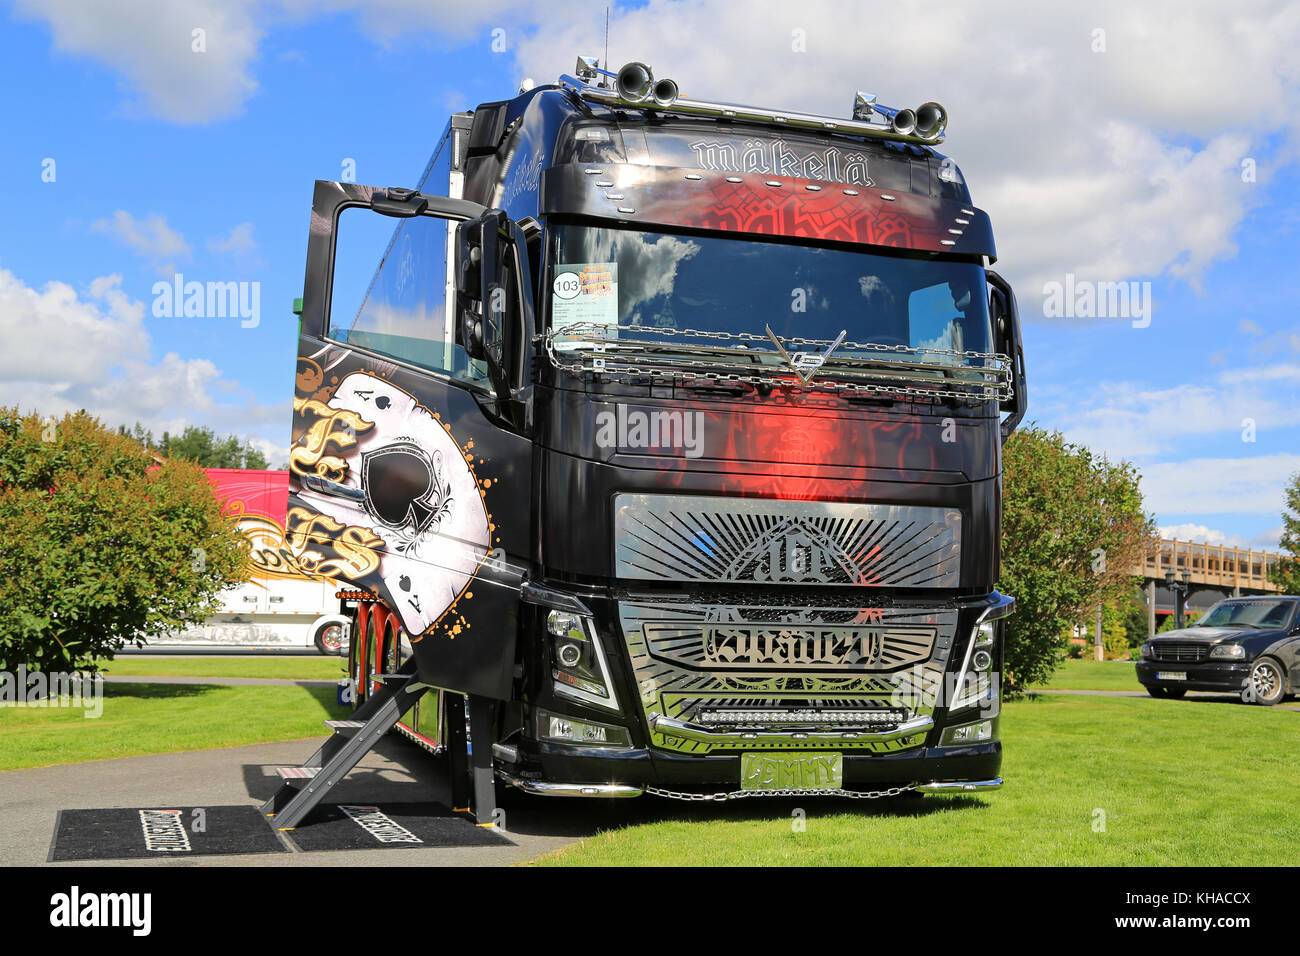 Alaharma, Finlandia - 7 agosto 2015: Volvo fh16 750 asso di picche vince il challenger categoria nella potenza Visualizza carrello 2015. Foto Stock